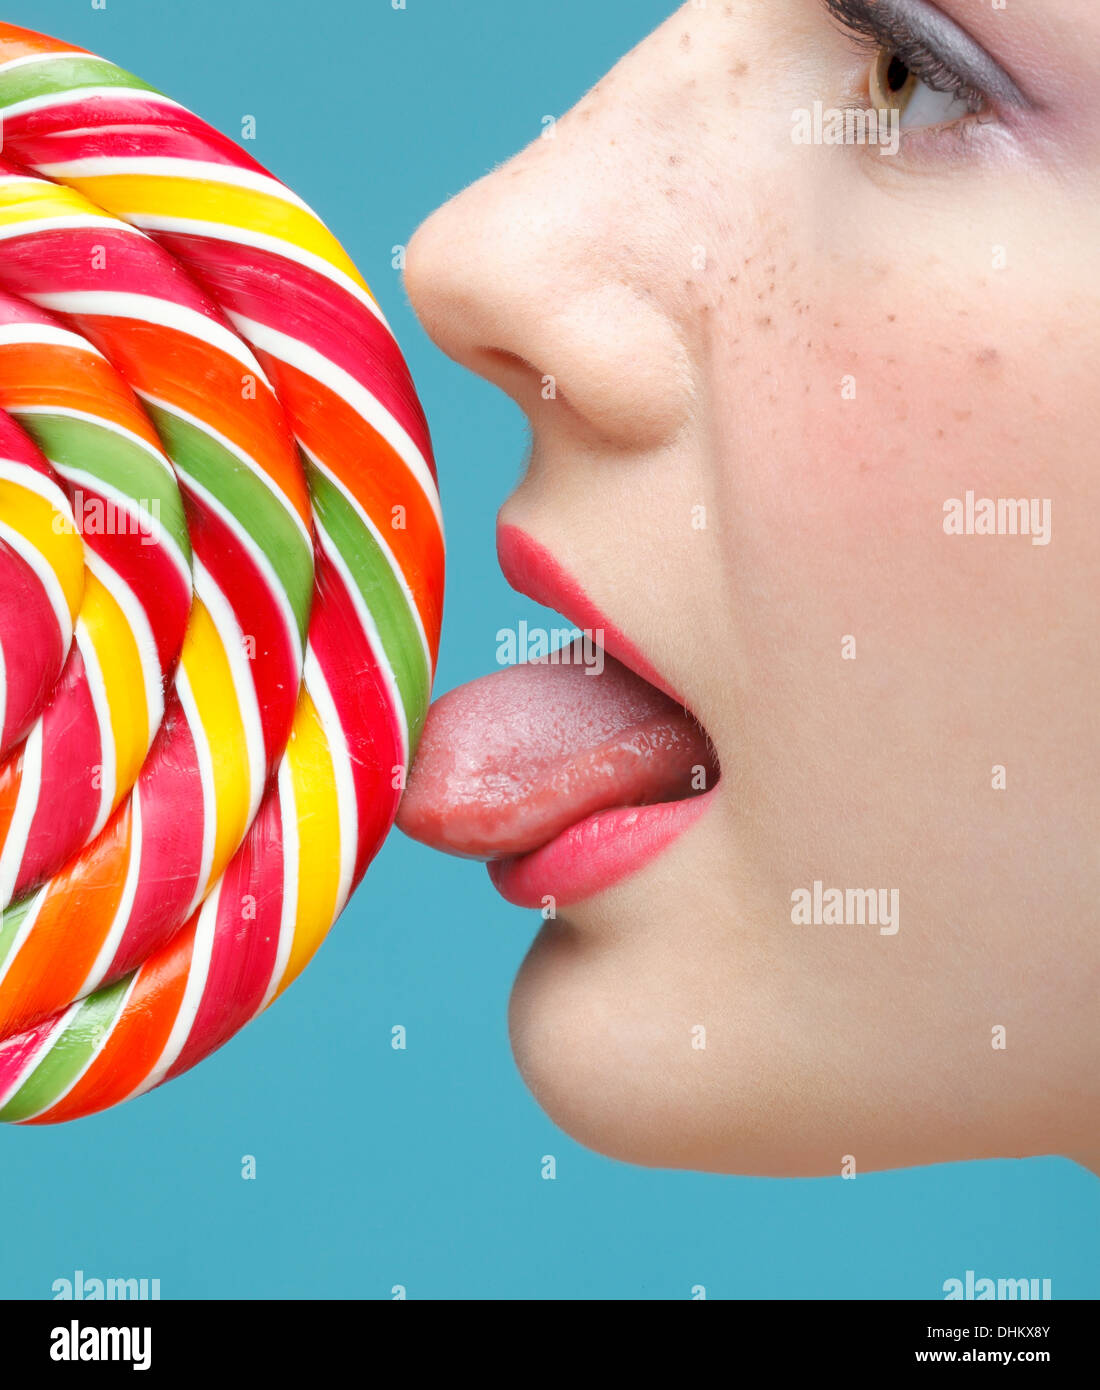 Licking sugarplum Stock Photo